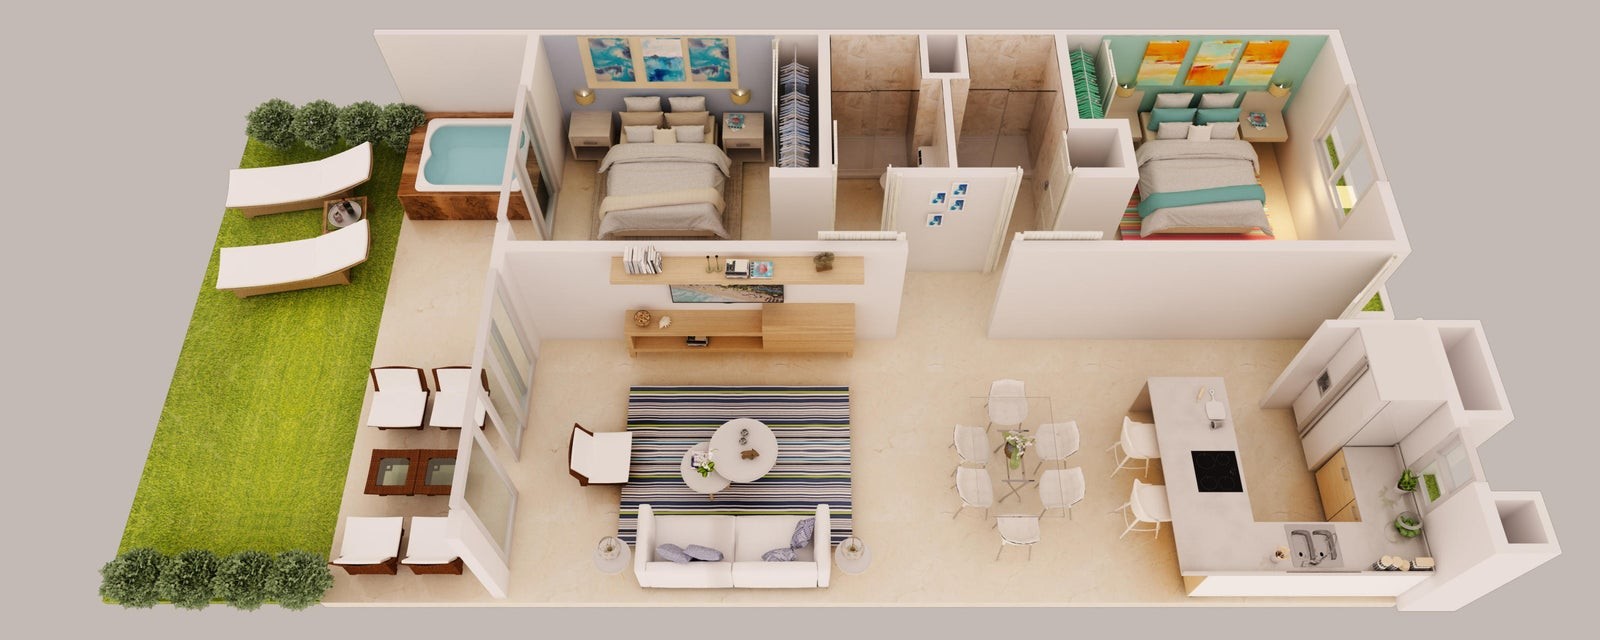 apartamentos - Apartamento a estrenar en venta #23-698 con 2 hab. 2 baños,  piscina, gimnasio.